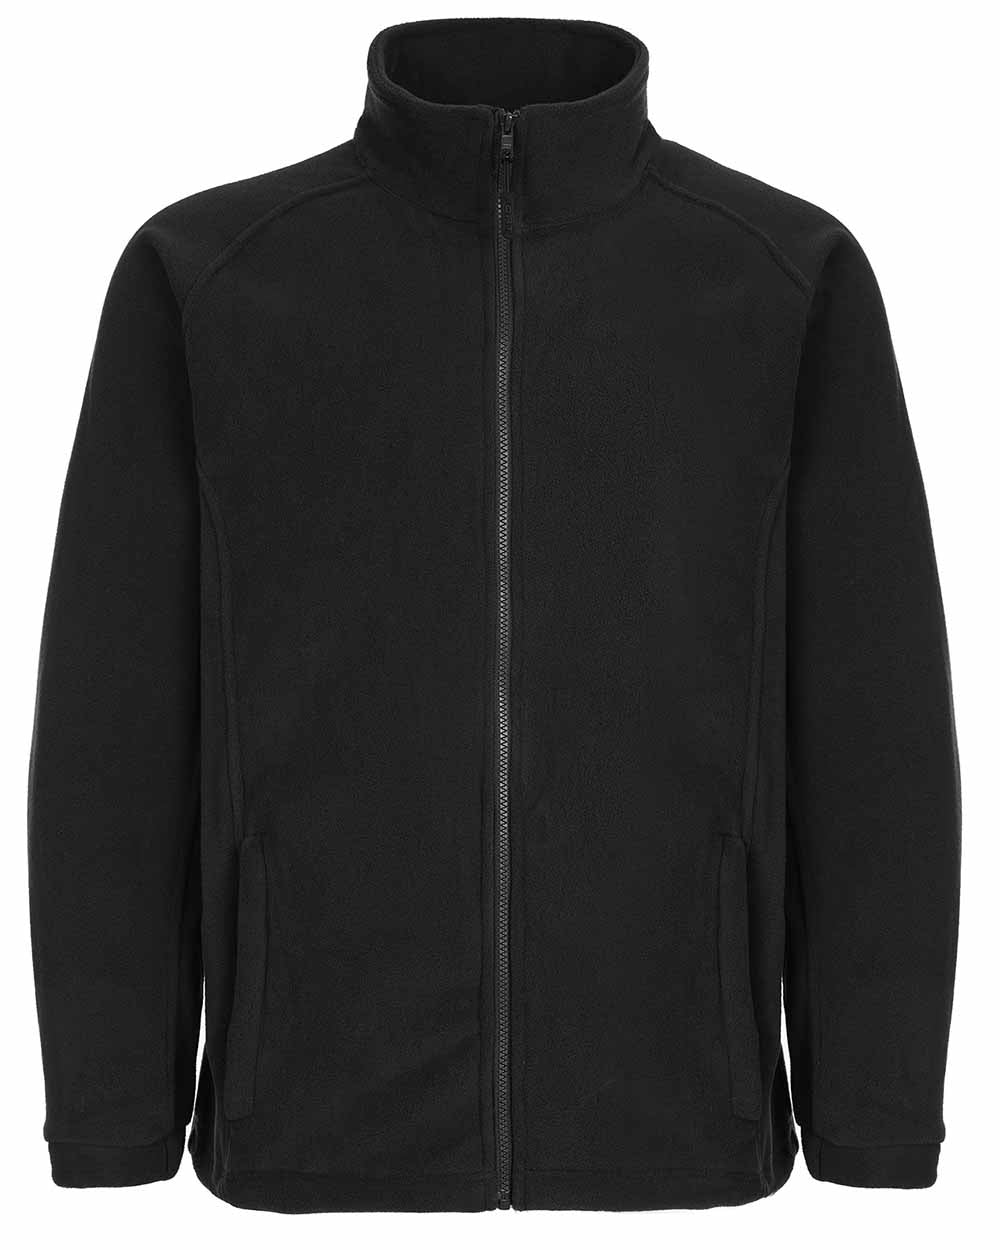 Black Coloured Fort Melrose Fleece Jacket On A White Background 